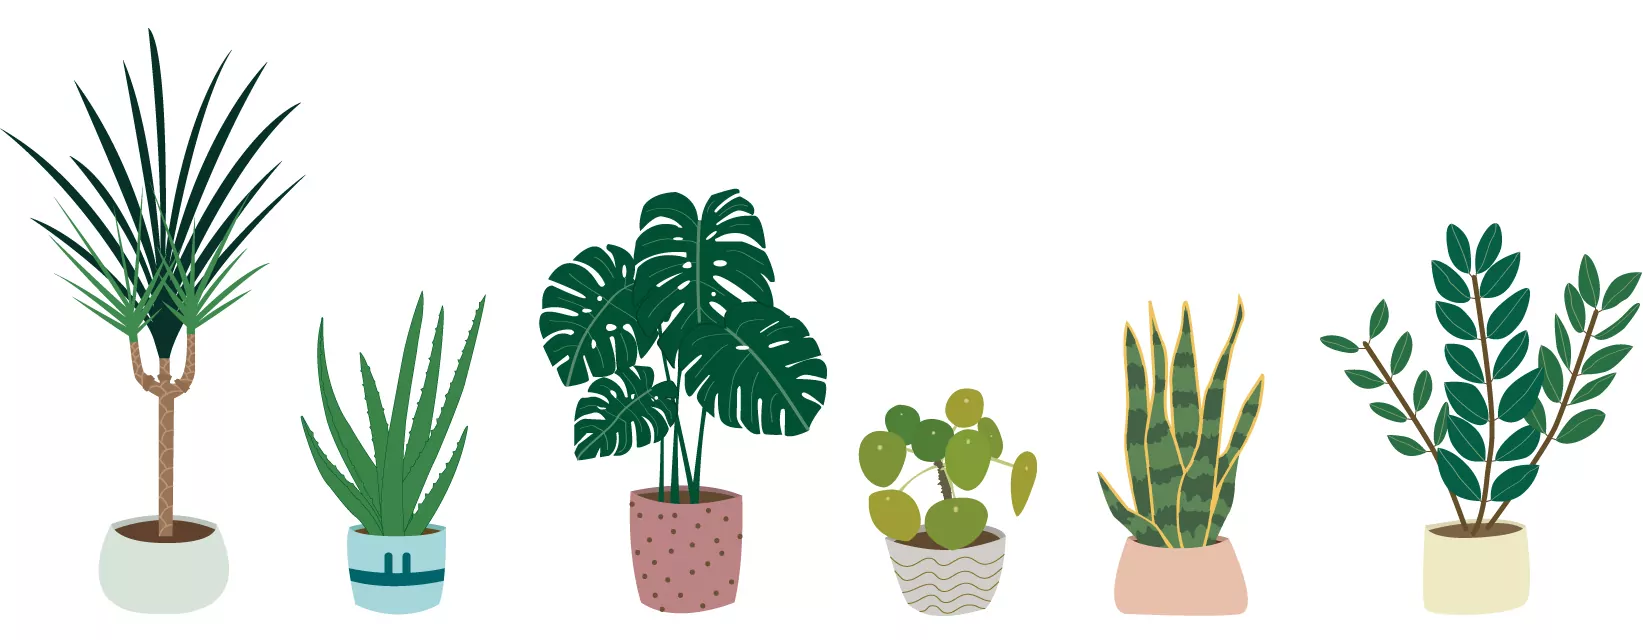 Illustrations des plantes